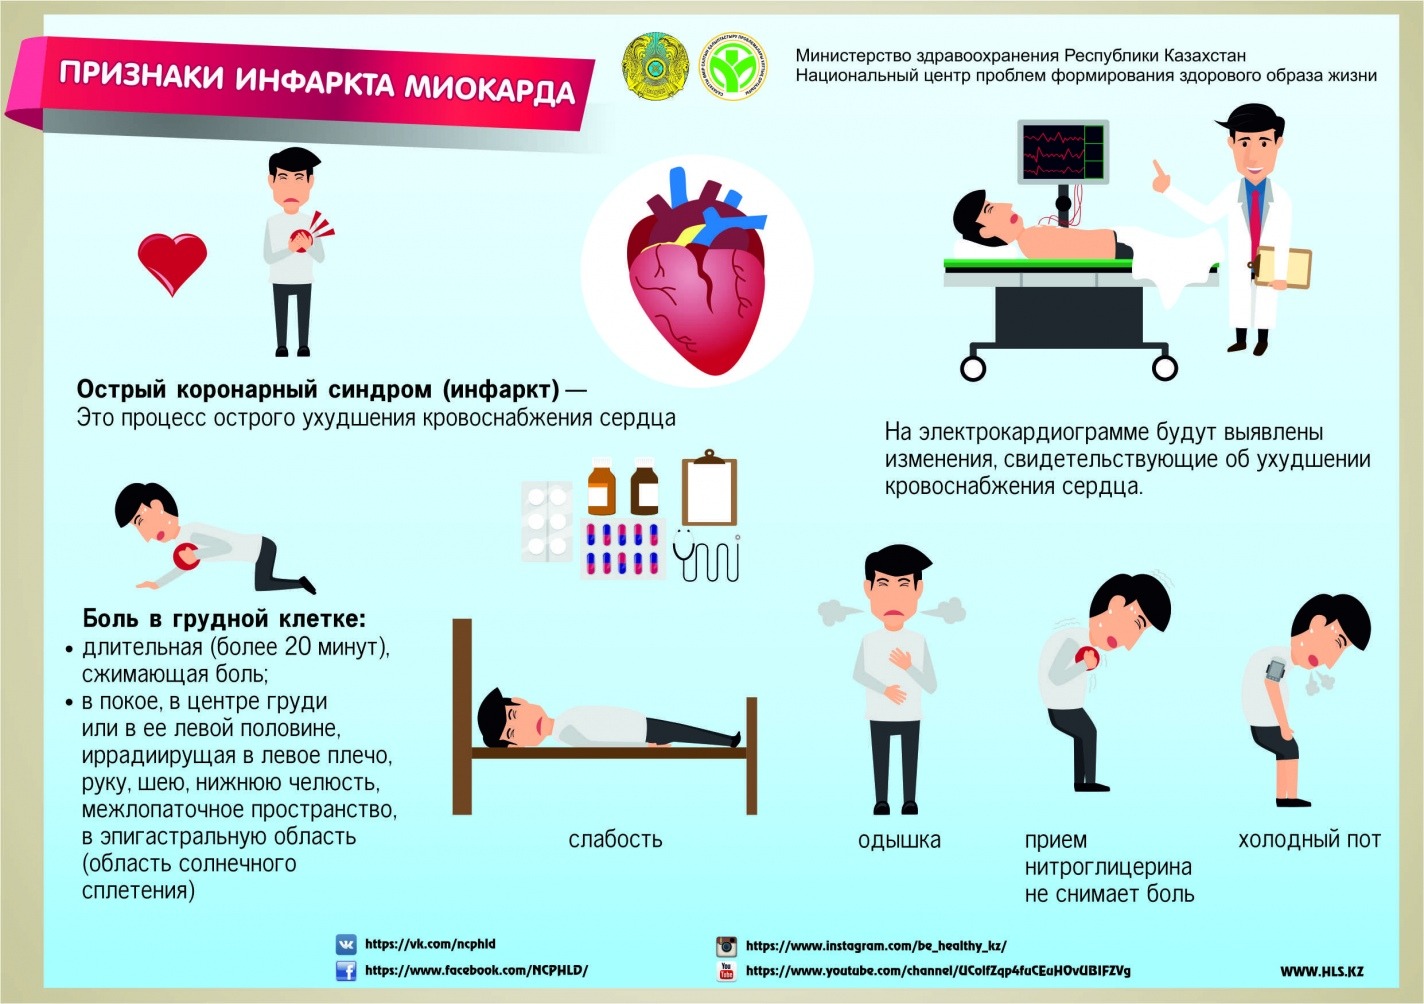 Сердечно-сосудистые заболевания - Городская поликлиника №8 г.Астана